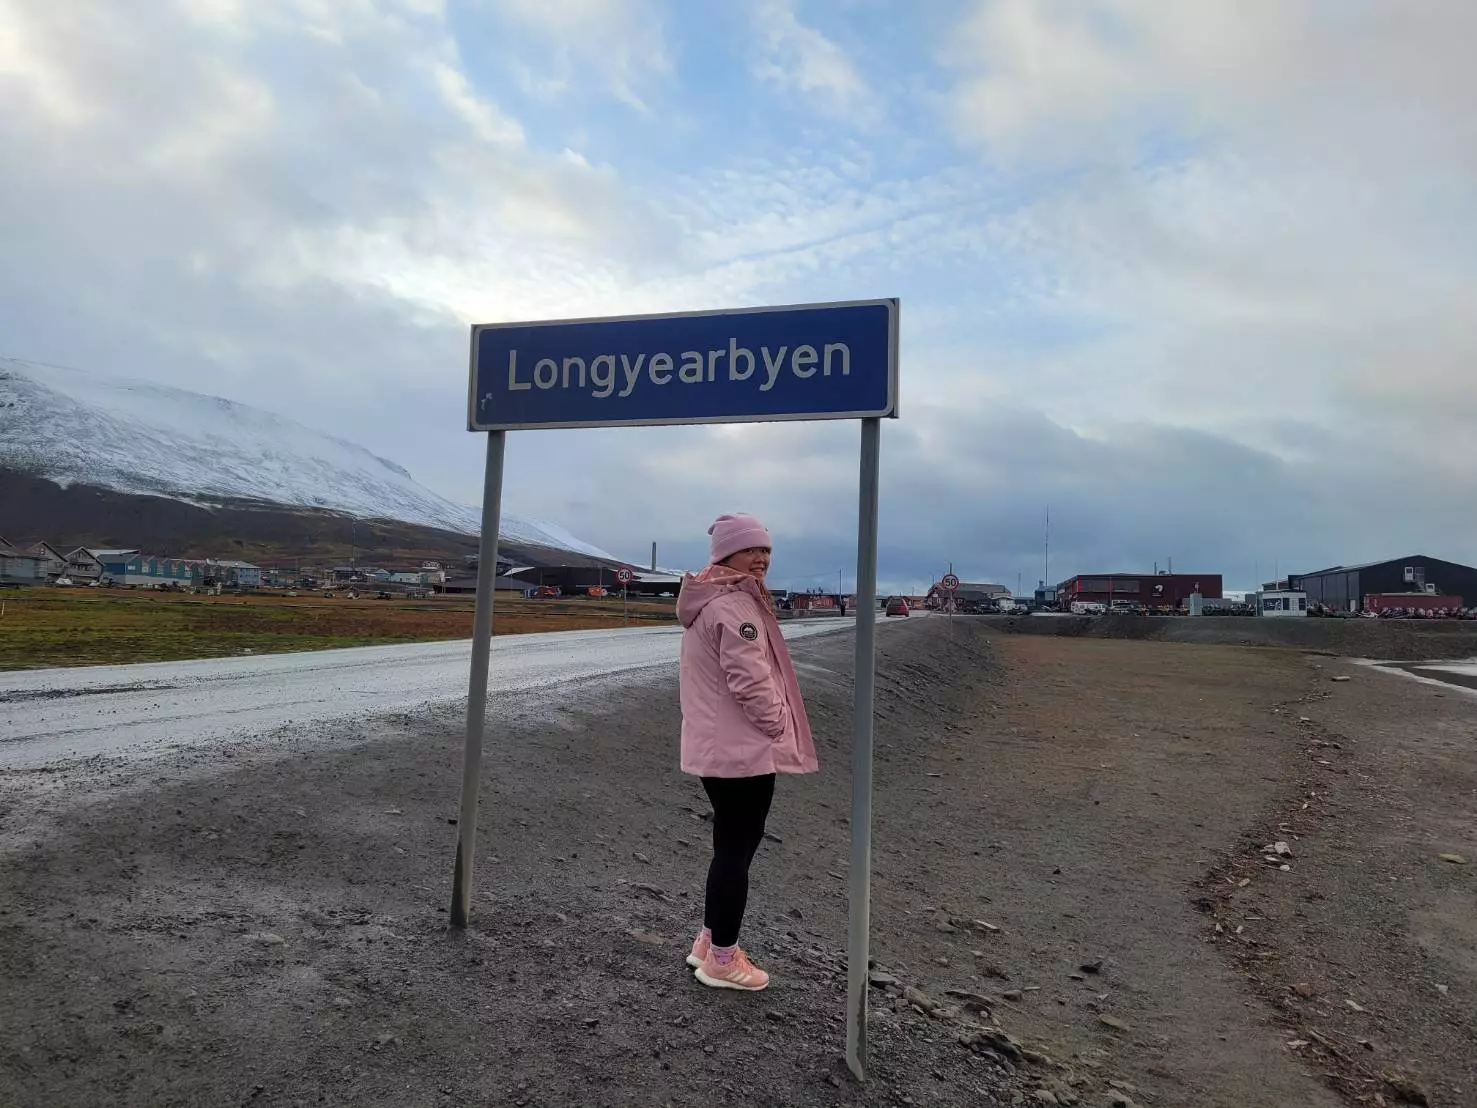 延伸閱讀：跨越50緯度的旅行｜Day4 在朗伊爾城散步、下雪、河邊、longyearbyen真的該來一趟，超酷超方便